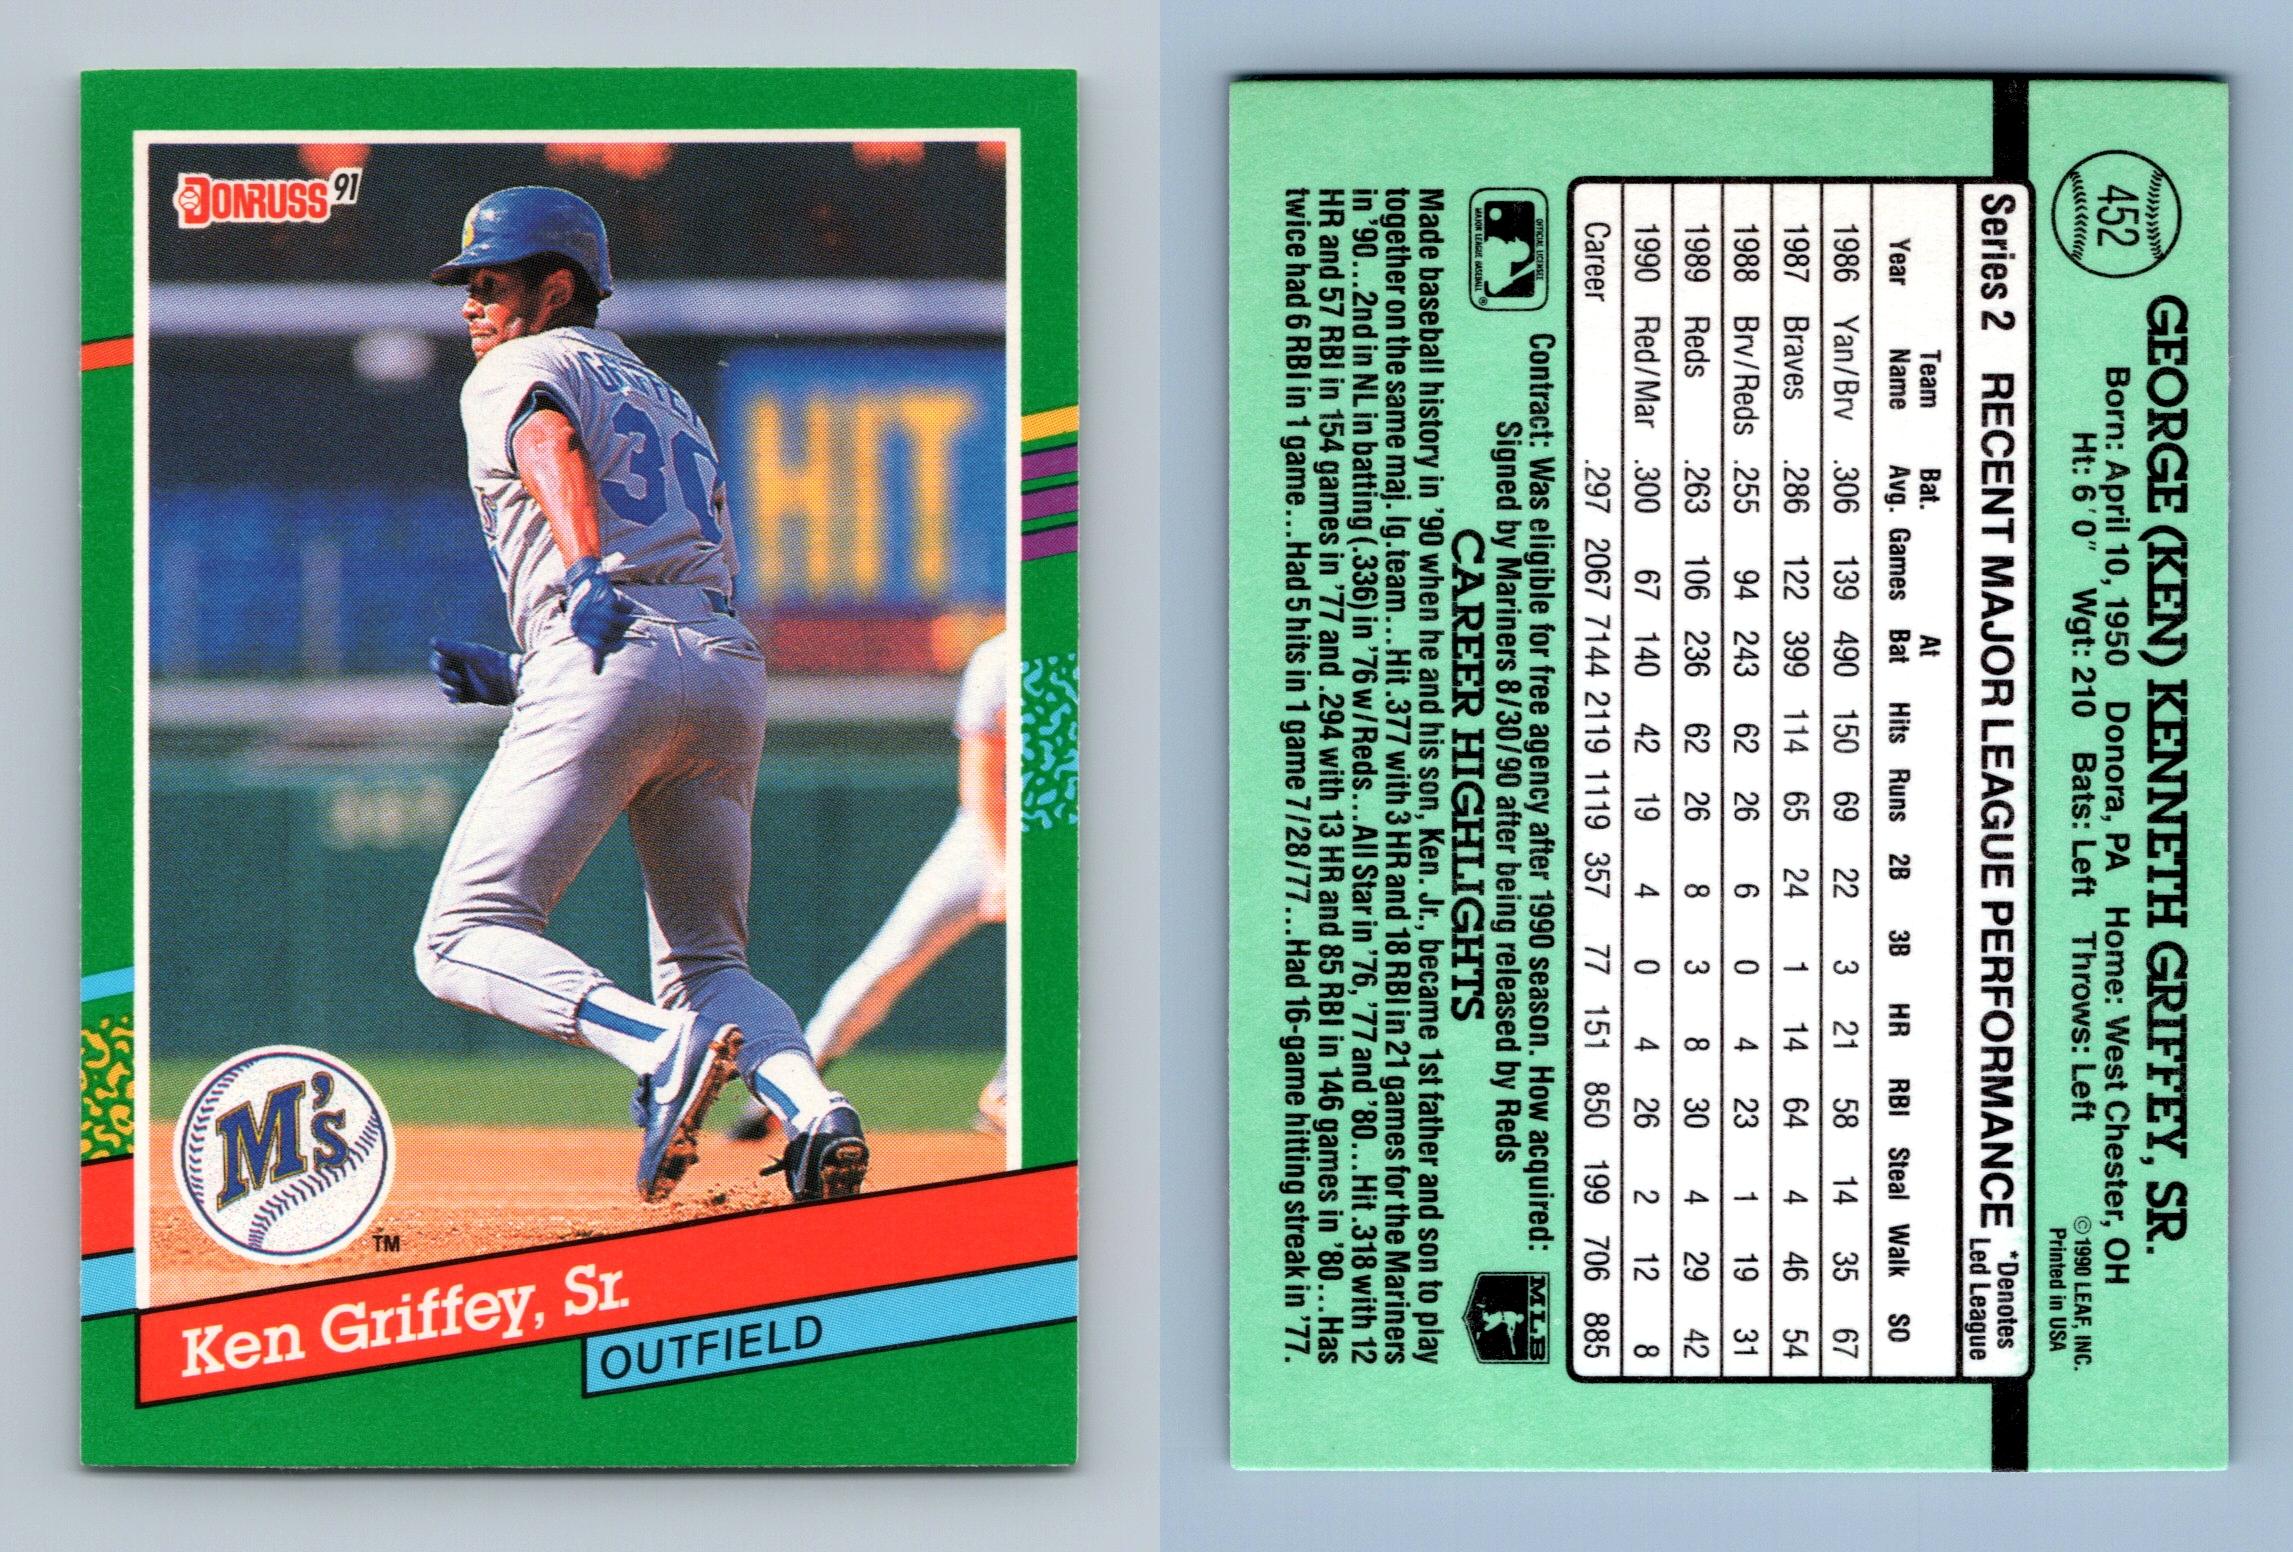  1991 Donruss Baseball Card #112 Mike Scioscia